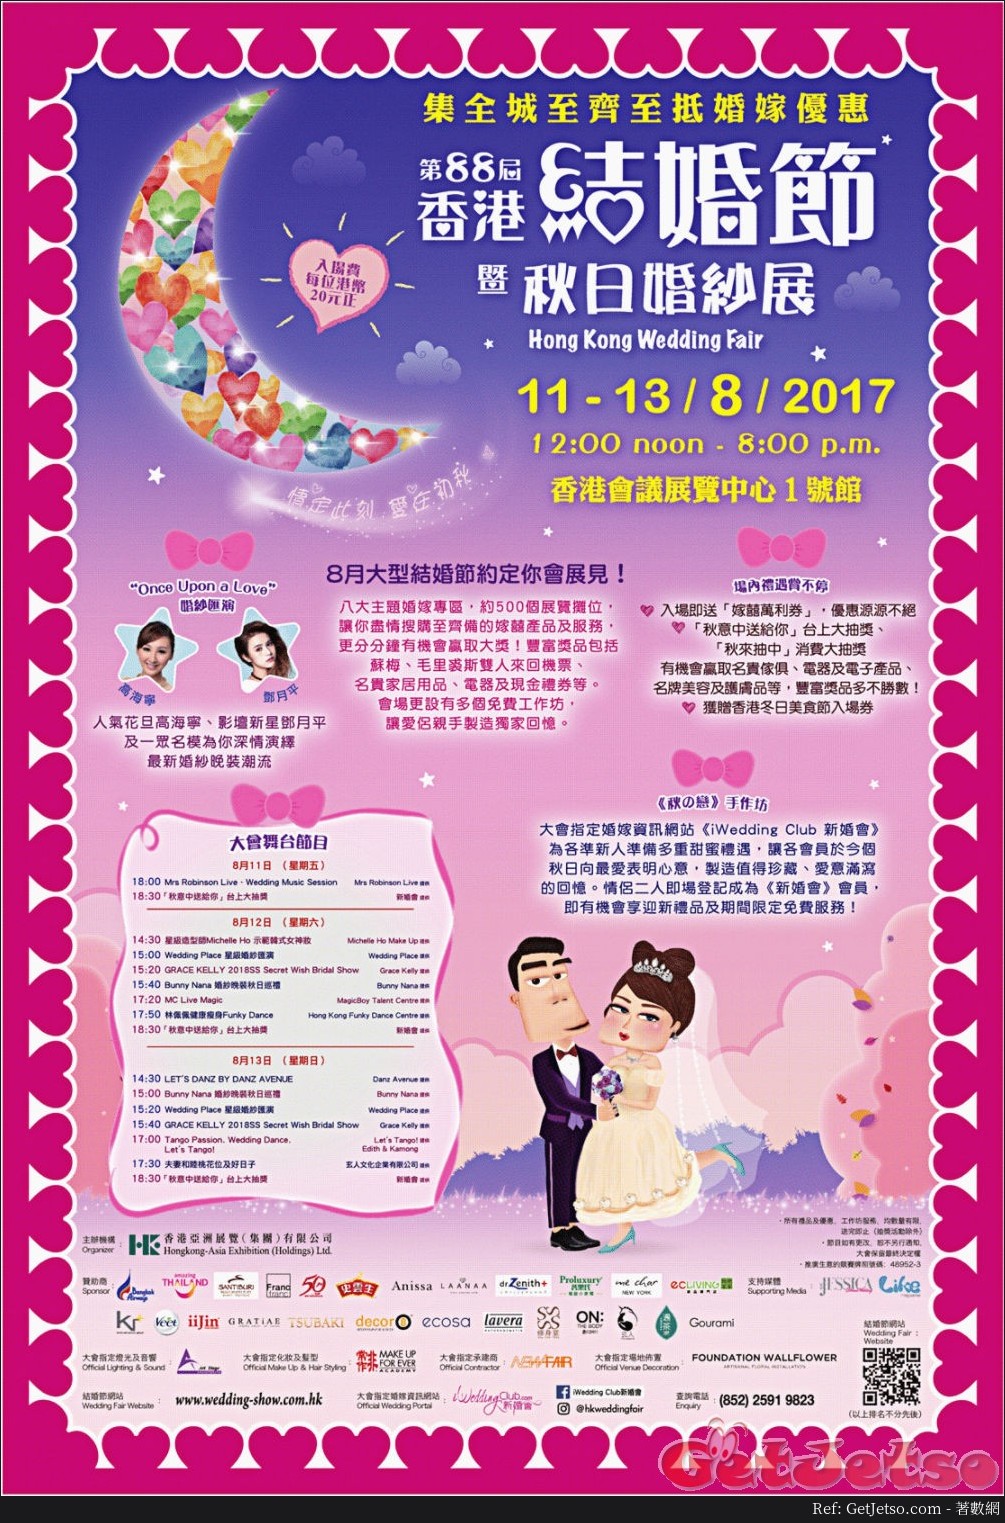 第88屆香港結婚節暨秋日婚紗展(17年8月11-13日)圖片1